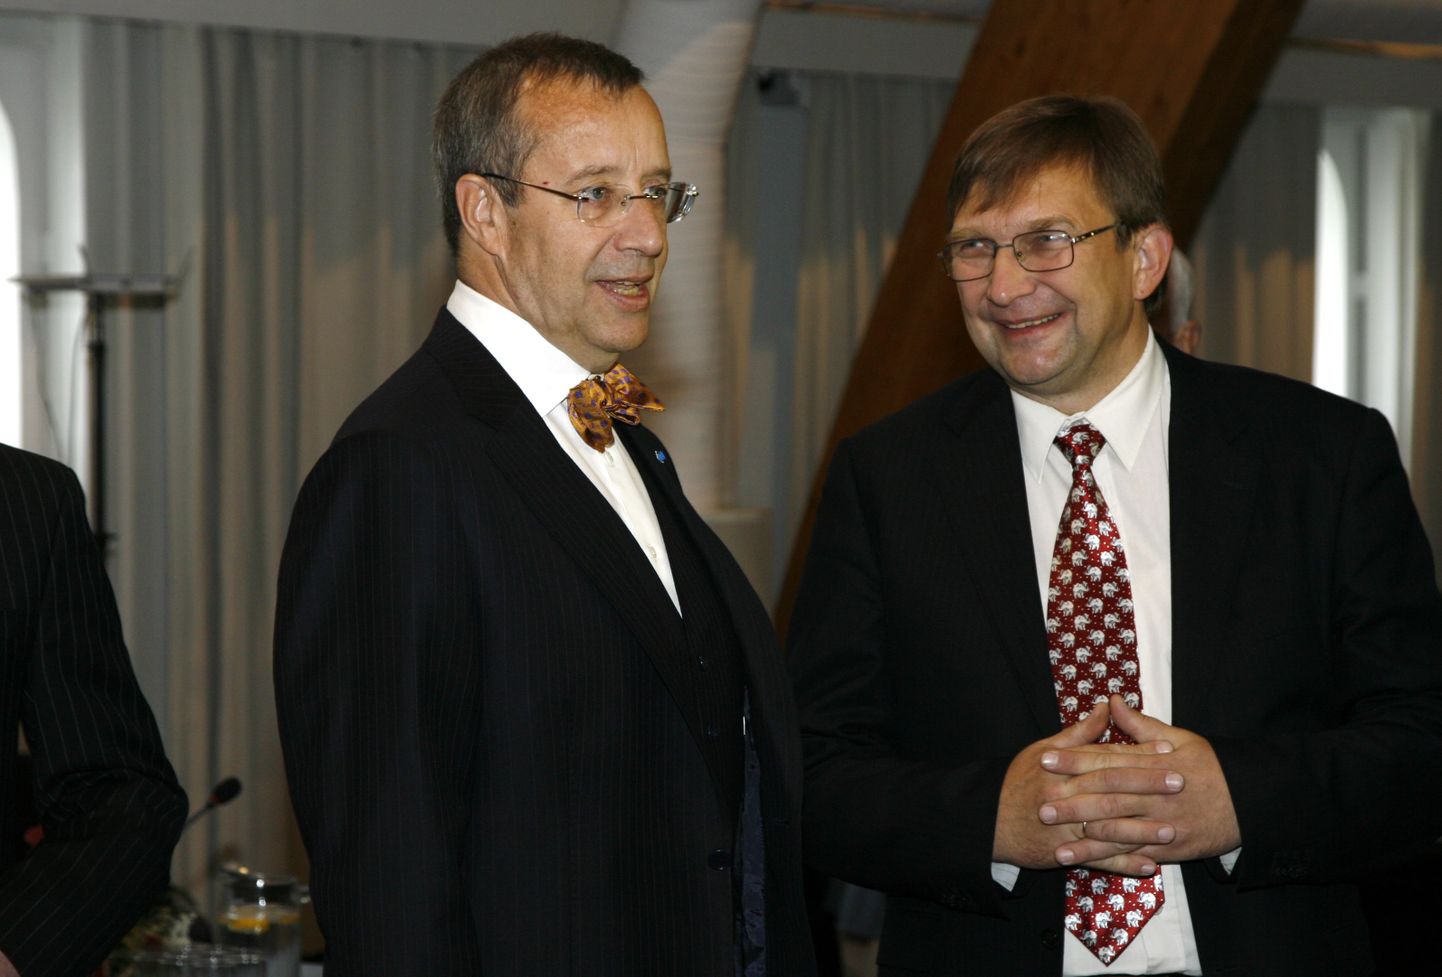 Директор Института эстонского языка Урмас Сутроп (справа) всяких там скотов не любит – ему приятно общество интеллектуалов.